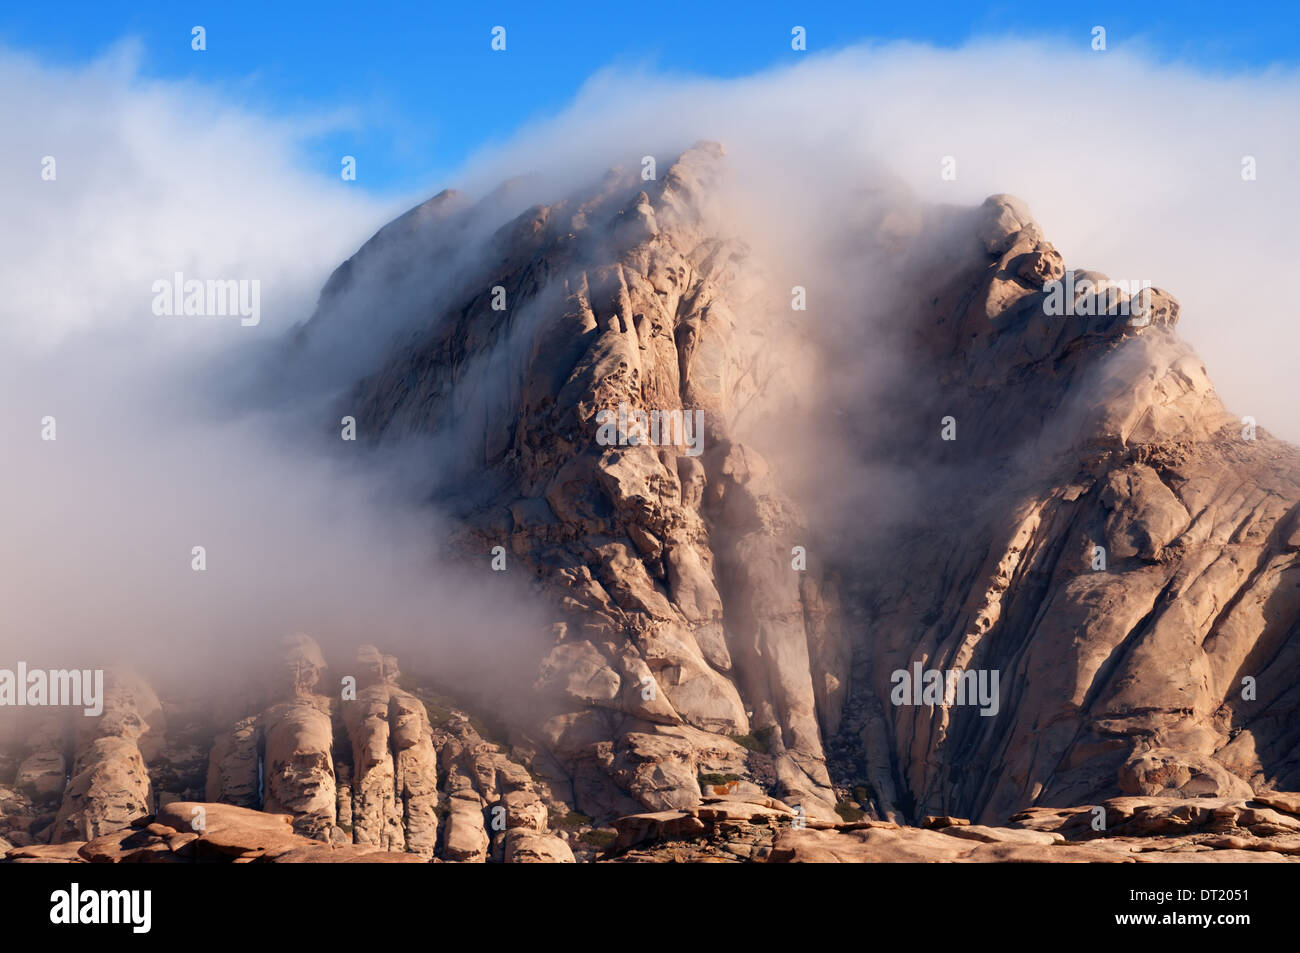 Nuages dans des montagnes du désert Bektau-Ata au Kazakhstan Banque D'Images